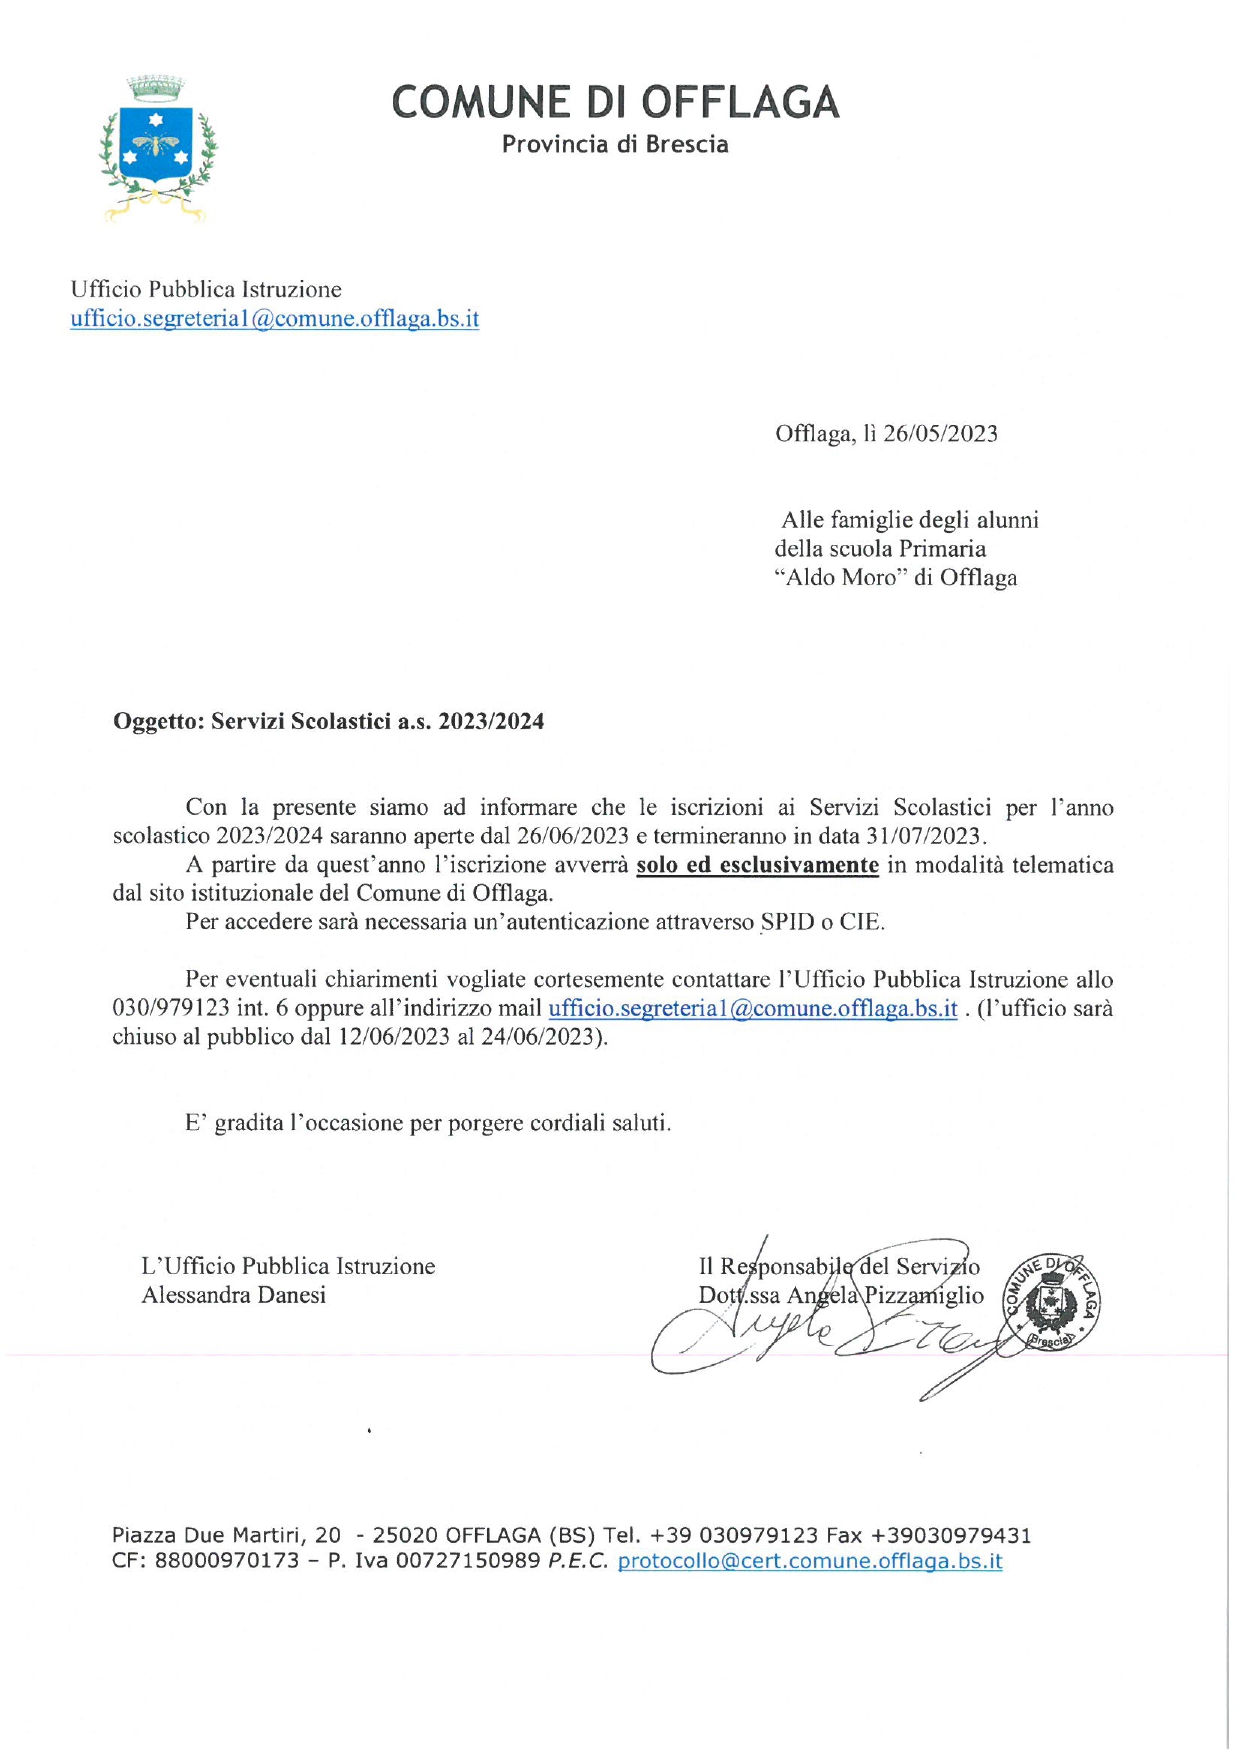 ICMANERBIO » Servizi scolastici a.s. 2023/2024-Comune di Offlaga per Scuola  Primaria e Scuola Secondaria